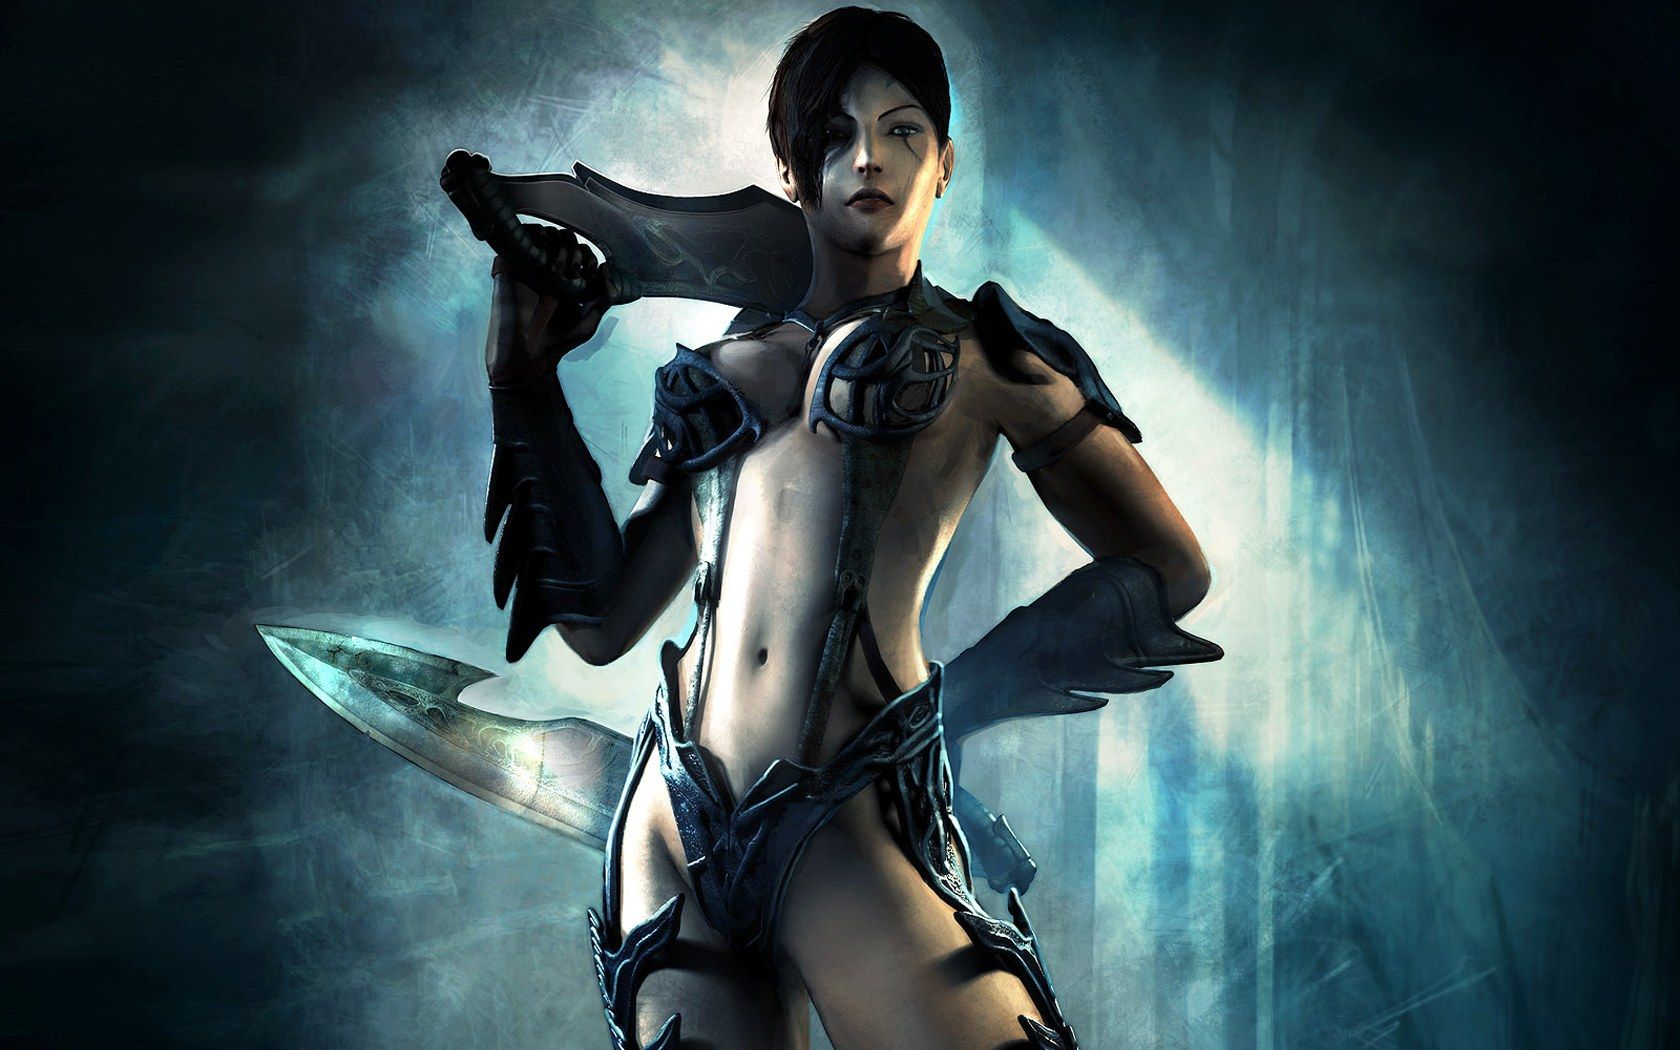 Background, Warrior Women Fantasy Art Background, Fighting